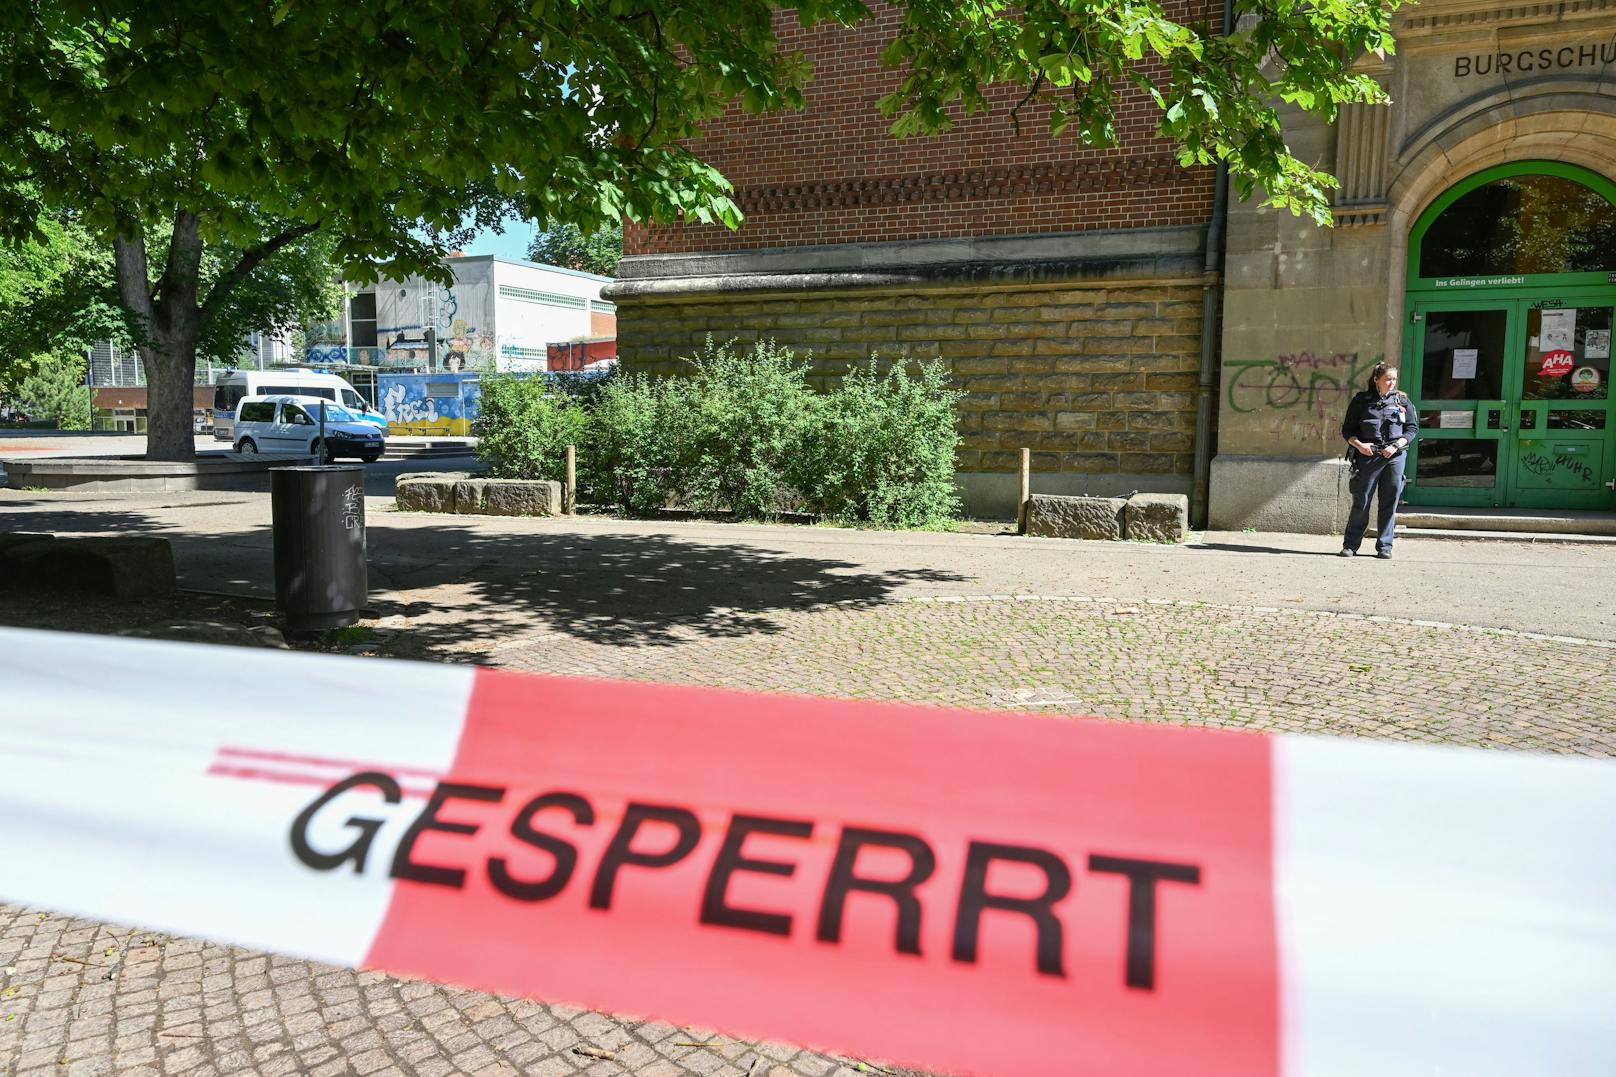 Bei einer Messer-Attacke im Umfeld einer Volksschule im deutschen Esslingen am Neckar wurden am 10. Juni 2022 eine Frau und ein Kind schwer verletzt.